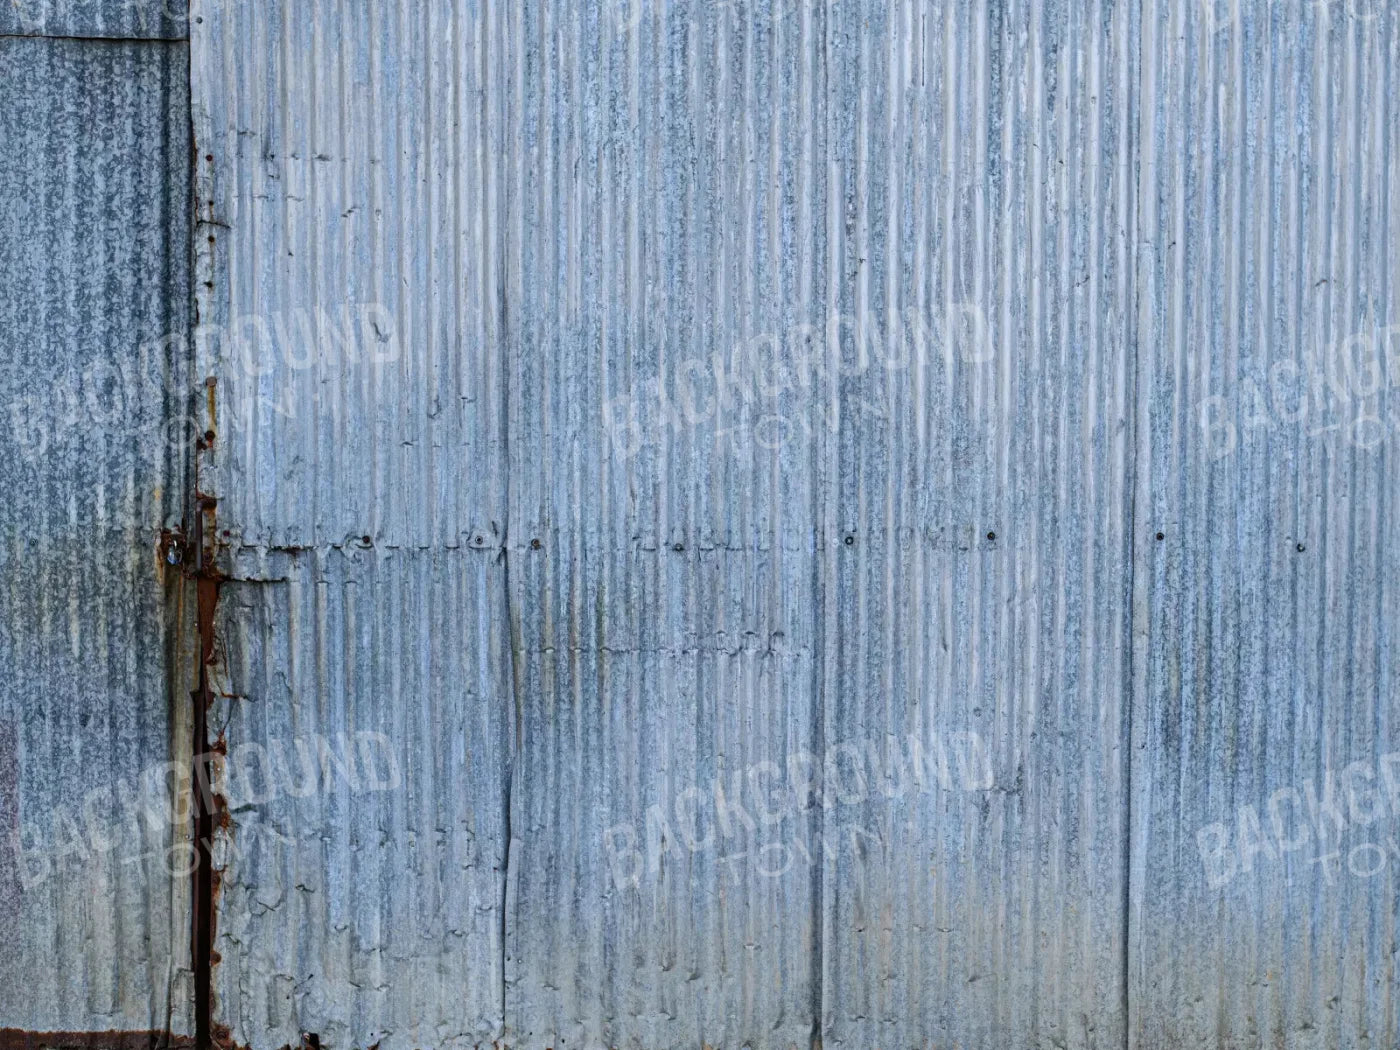 Barn Steel 7X5 Ultracloth ( 84 X 60 Inch ) Backdrop